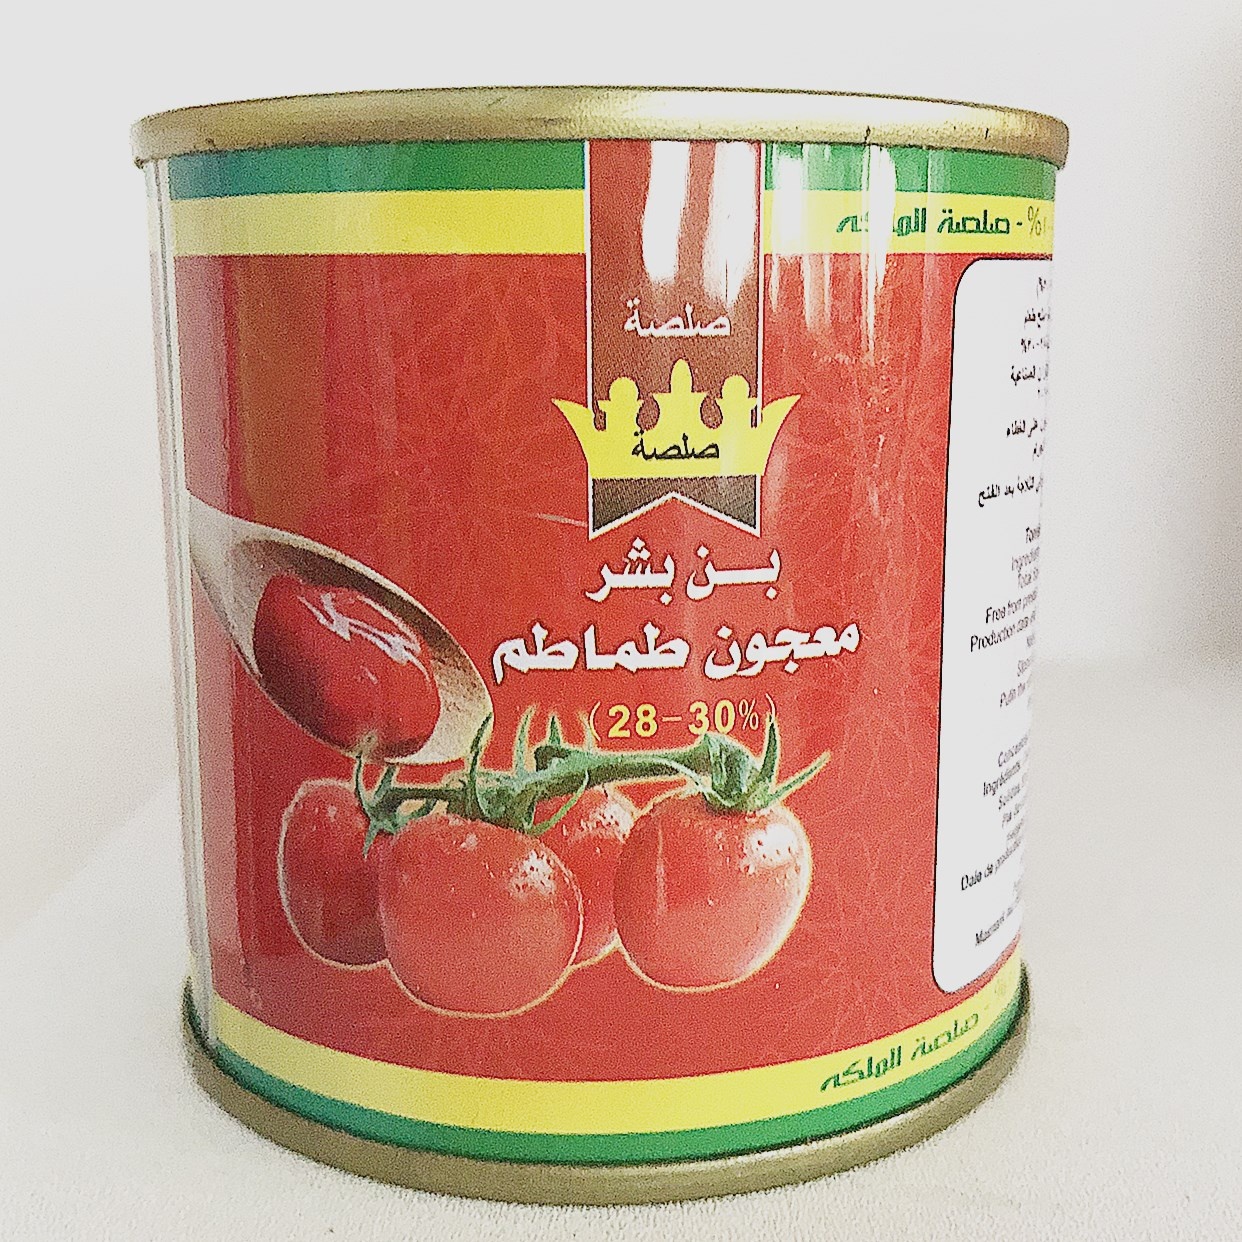 Canned Nullam Crustulum et Cibus supplementum ad Dubai cum C% puritas